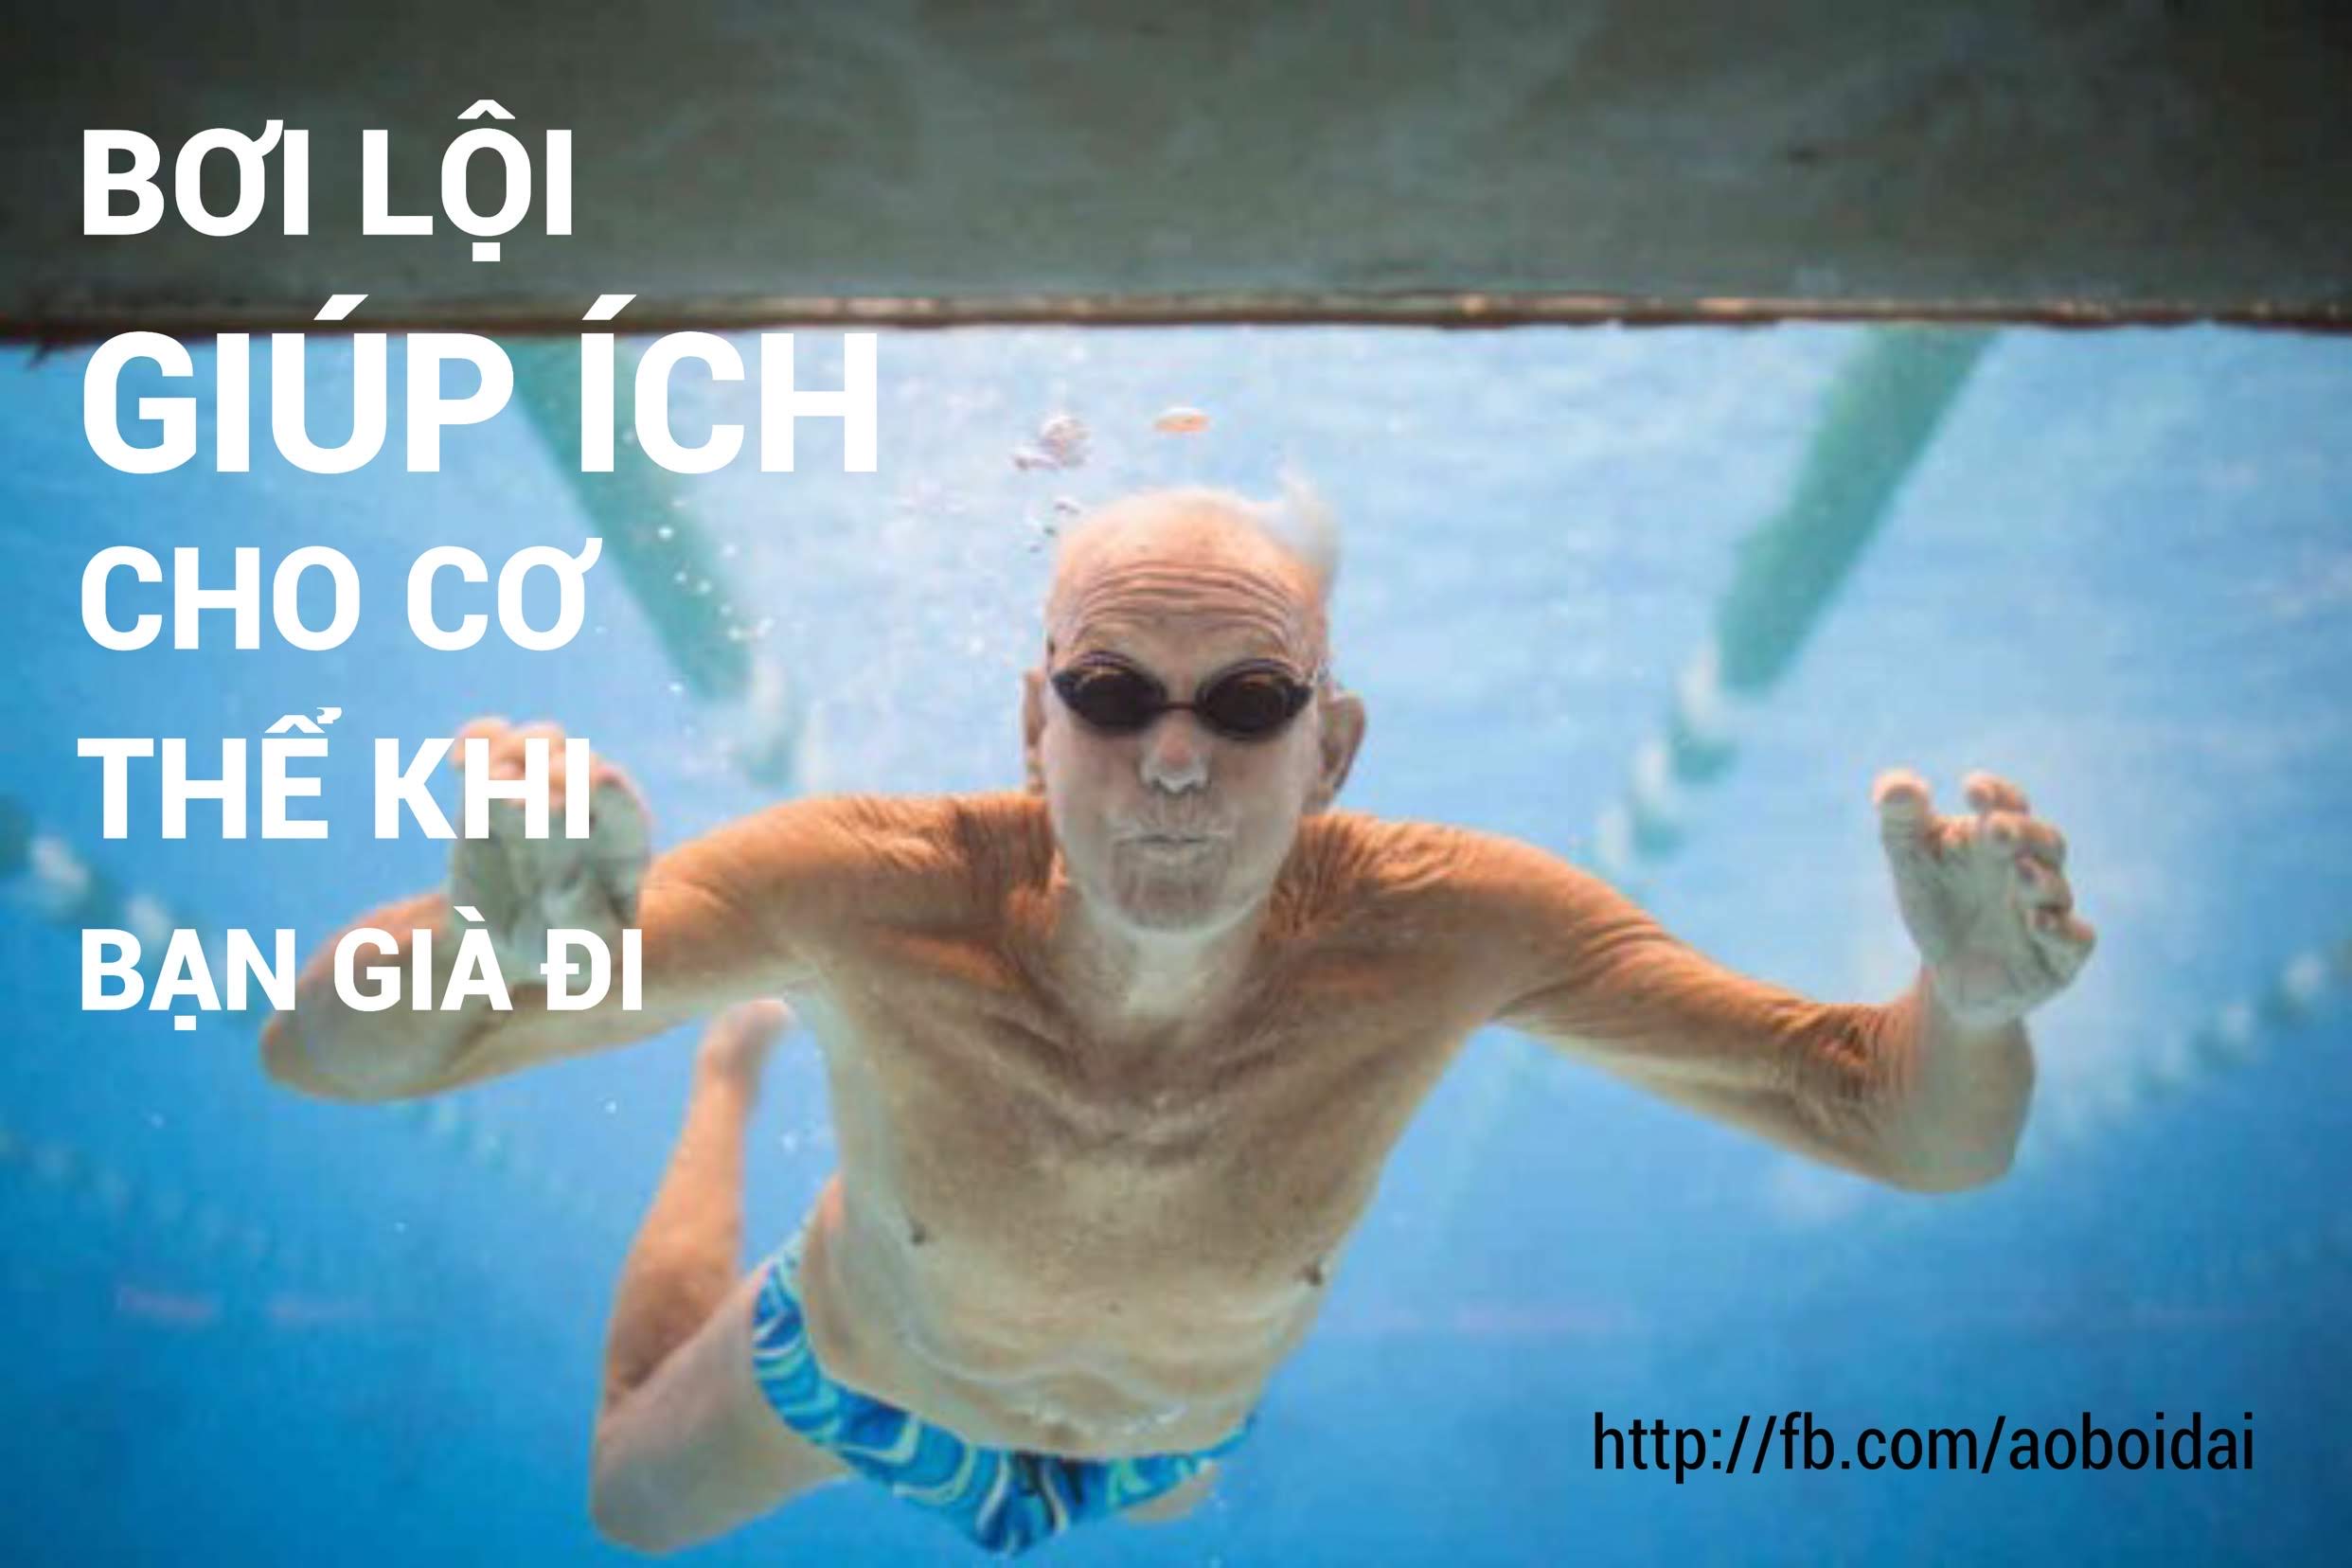 Bơi lội giúp ích cho cơ thể bạn khi bạn già đi